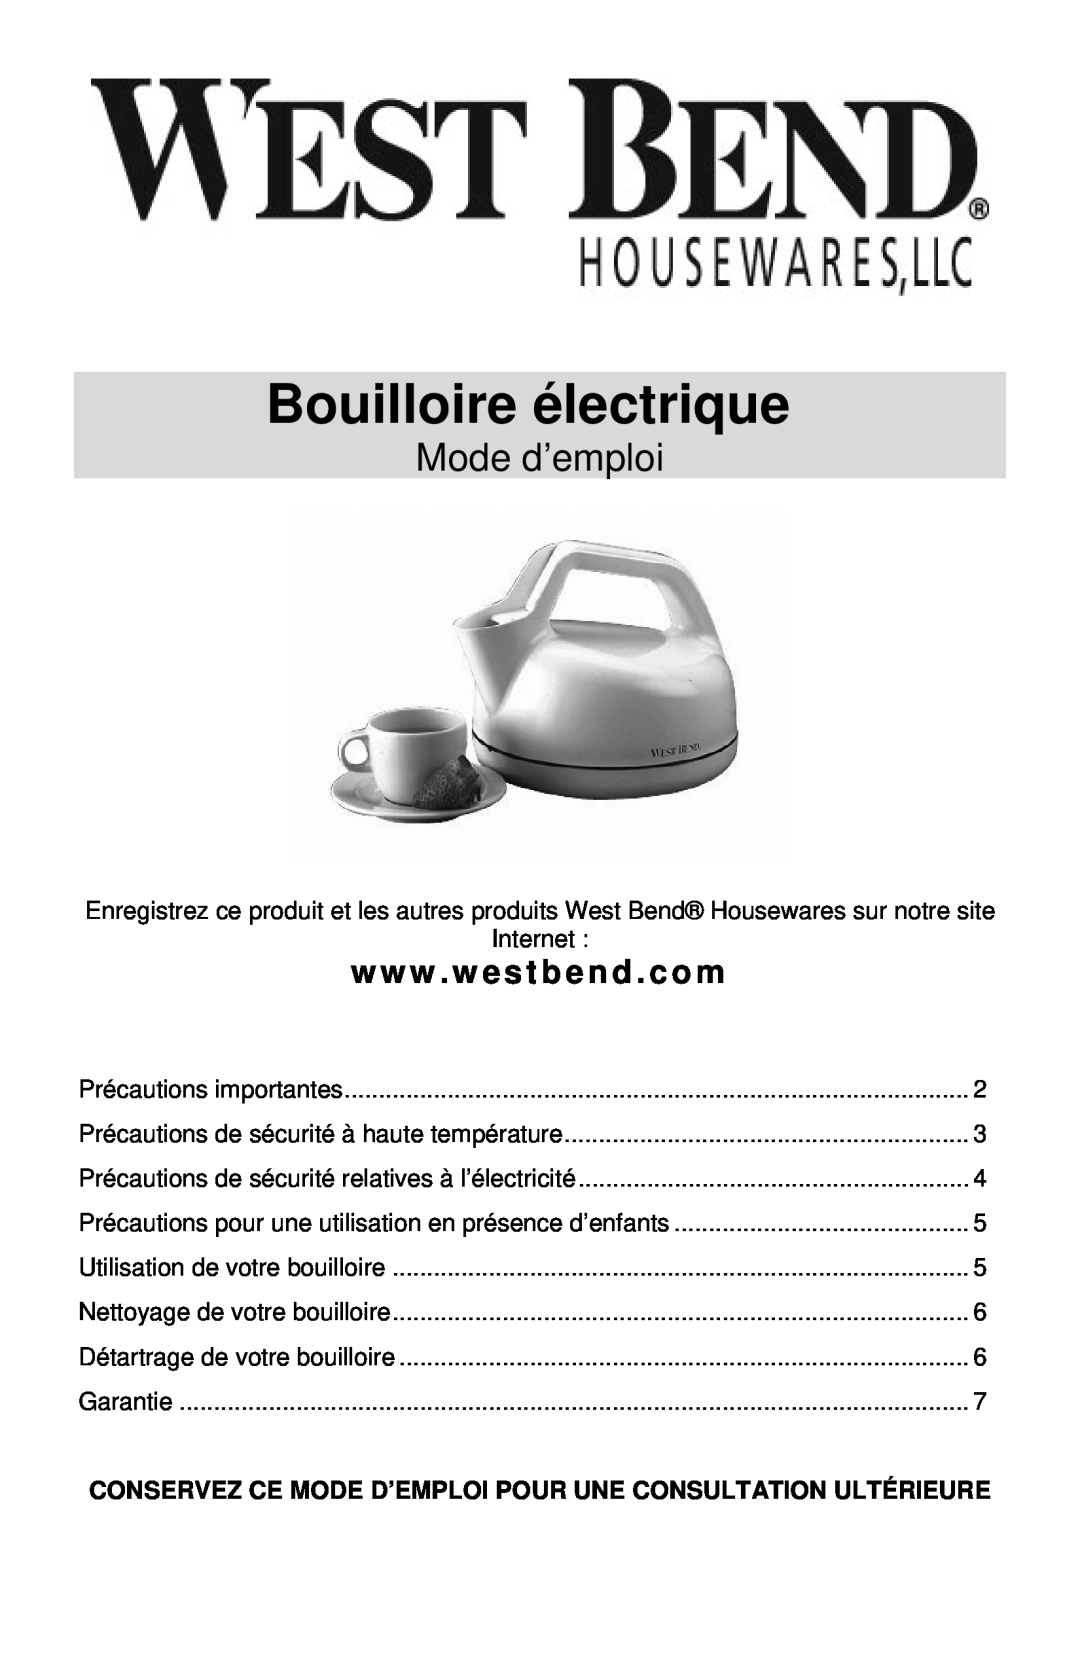 West Bend 6400 instruction manual Bouilloire électrique, Mode d’emploi, www . westbend . com 